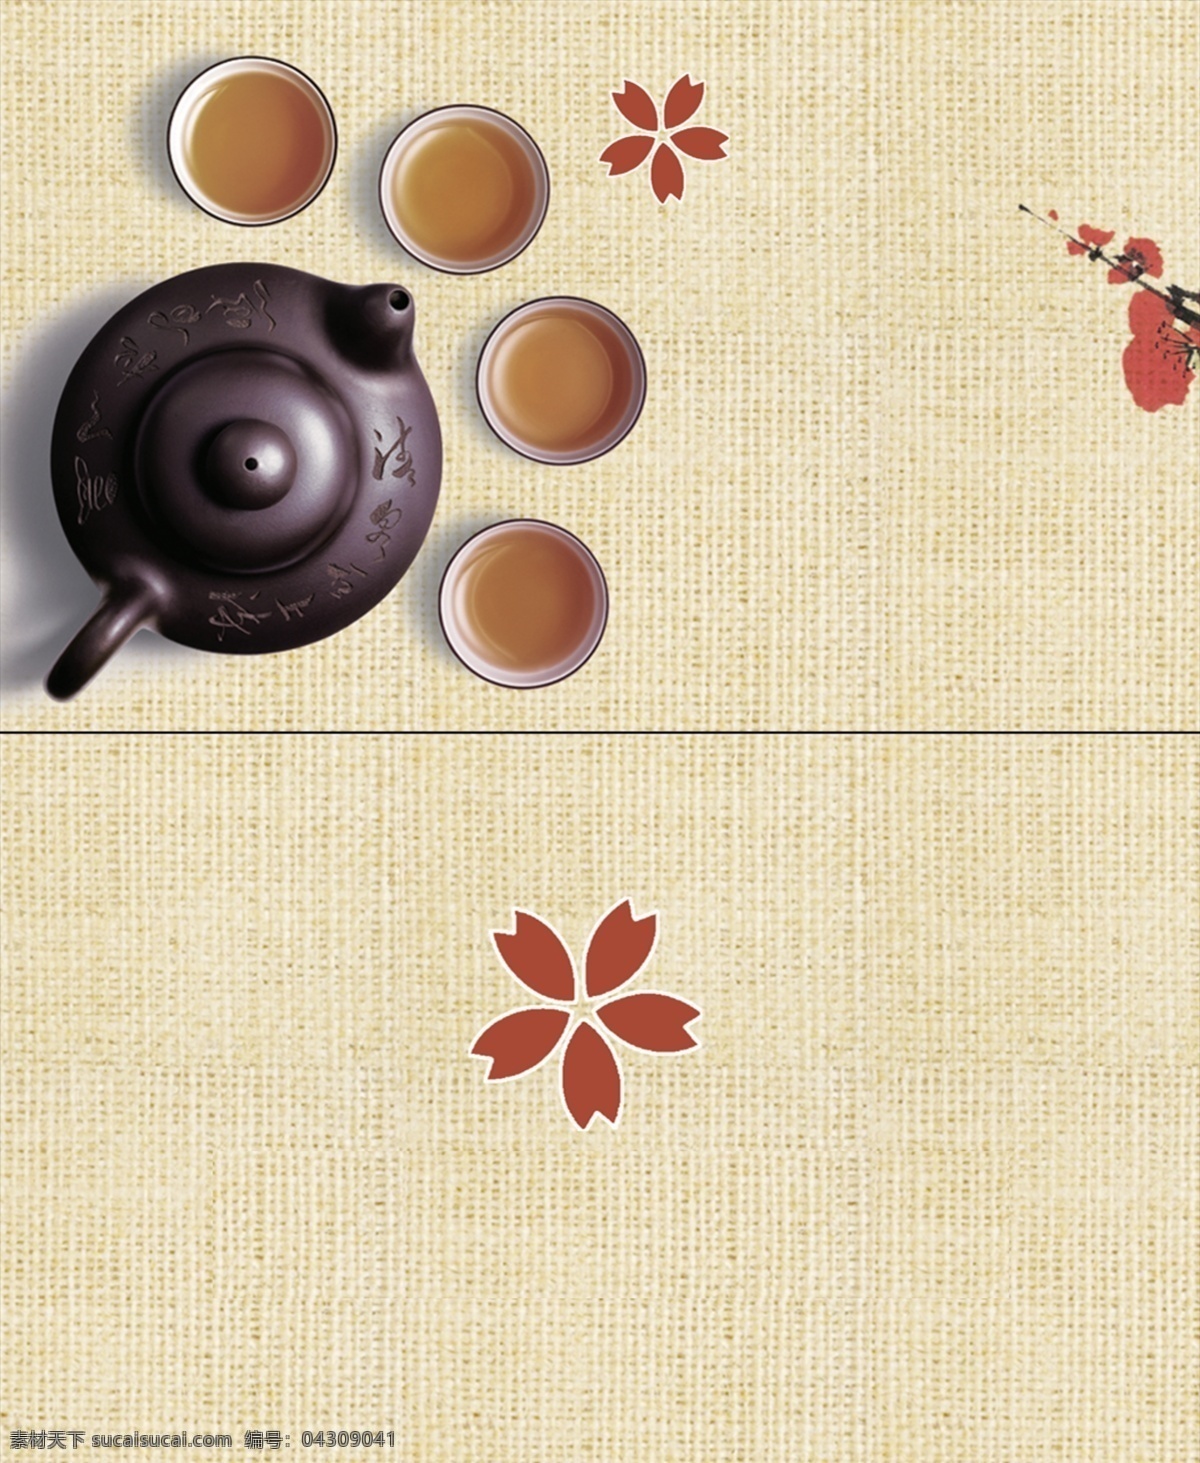 茶叶名片 名片背景 茶叶名片背景 俭朴茶叶名片 茶叶 名片卡片 广告设计模板 源文件